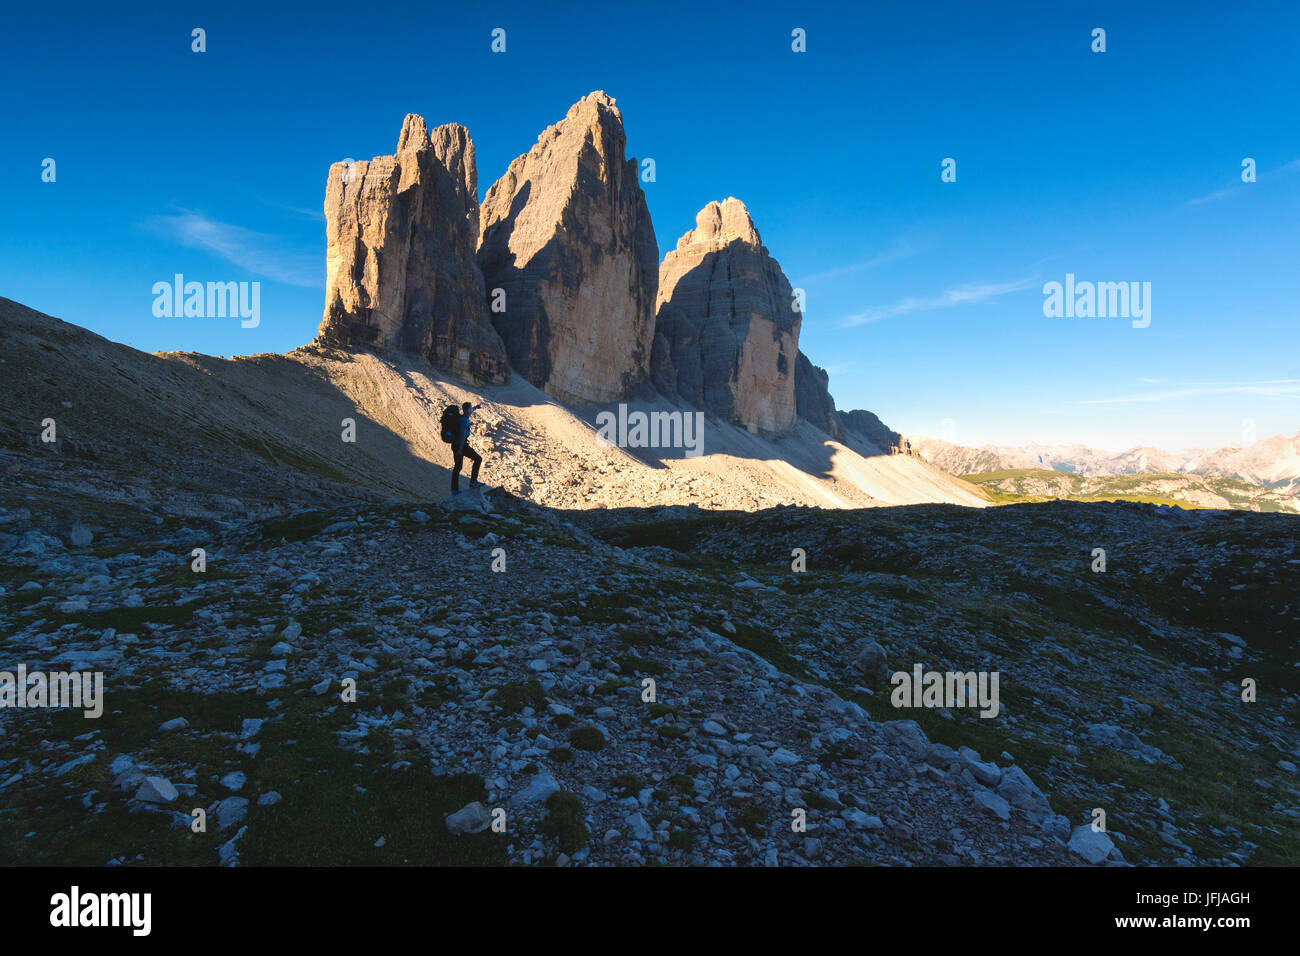 Hiker and the three peaks of Lavaredo, Bolzano province, Trentino Alto Adige, Italy, Stock Photo